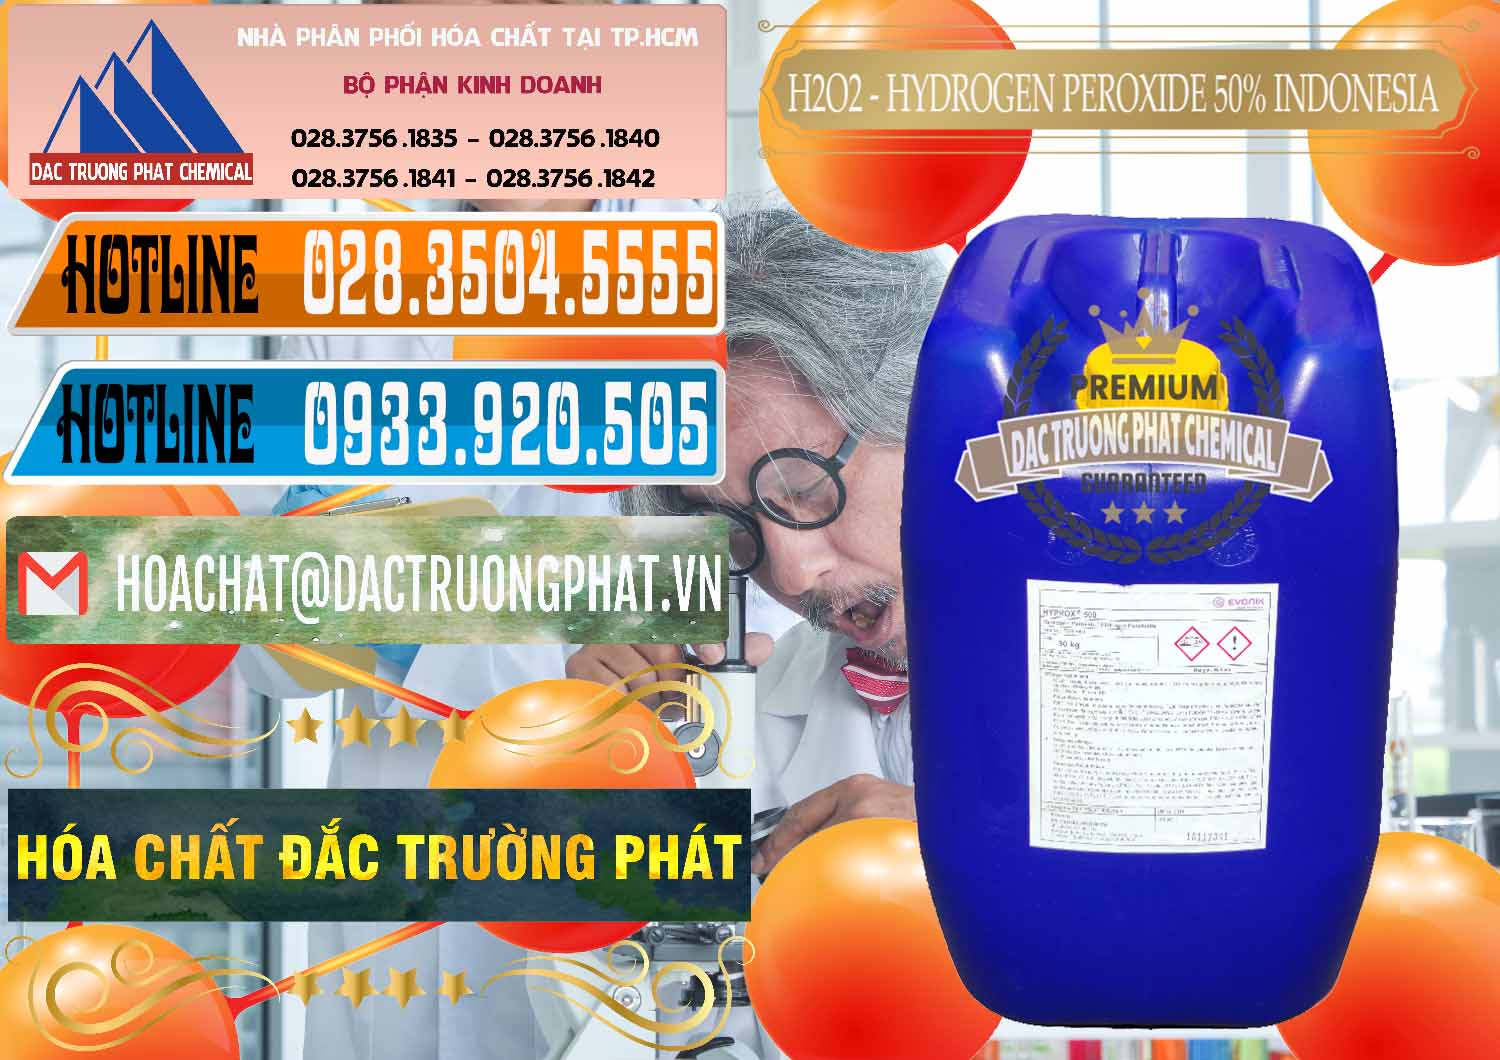 Chuyên bán - cung cấp H2O2 - Hydrogen Peroxide 50% Evonik Indonesia - 0070 - Nhà phân phối - cung cấp hóa chất tại TP.HCM - stmp.net